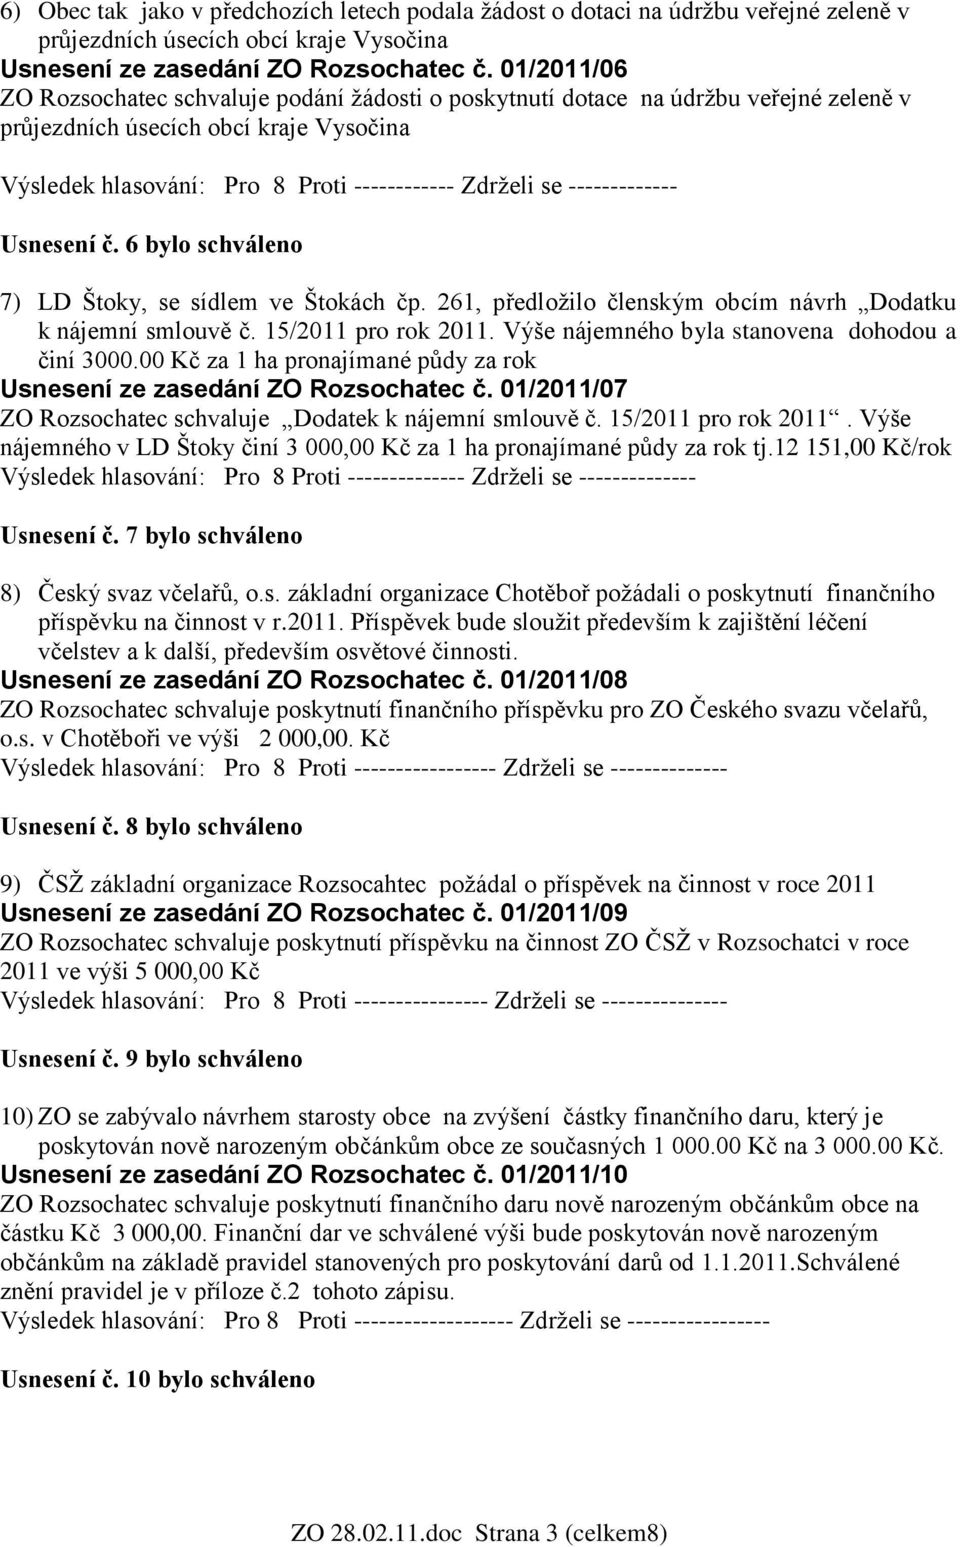 ------------- Usnesení č. 6 bylo schváleno 7) LD Štoky, se sídlem ve Štokách čp. 261, předloţilo členským obcím návrh Dodatku k nájemní smlouvě č. 15/2011 pro rok 2011.